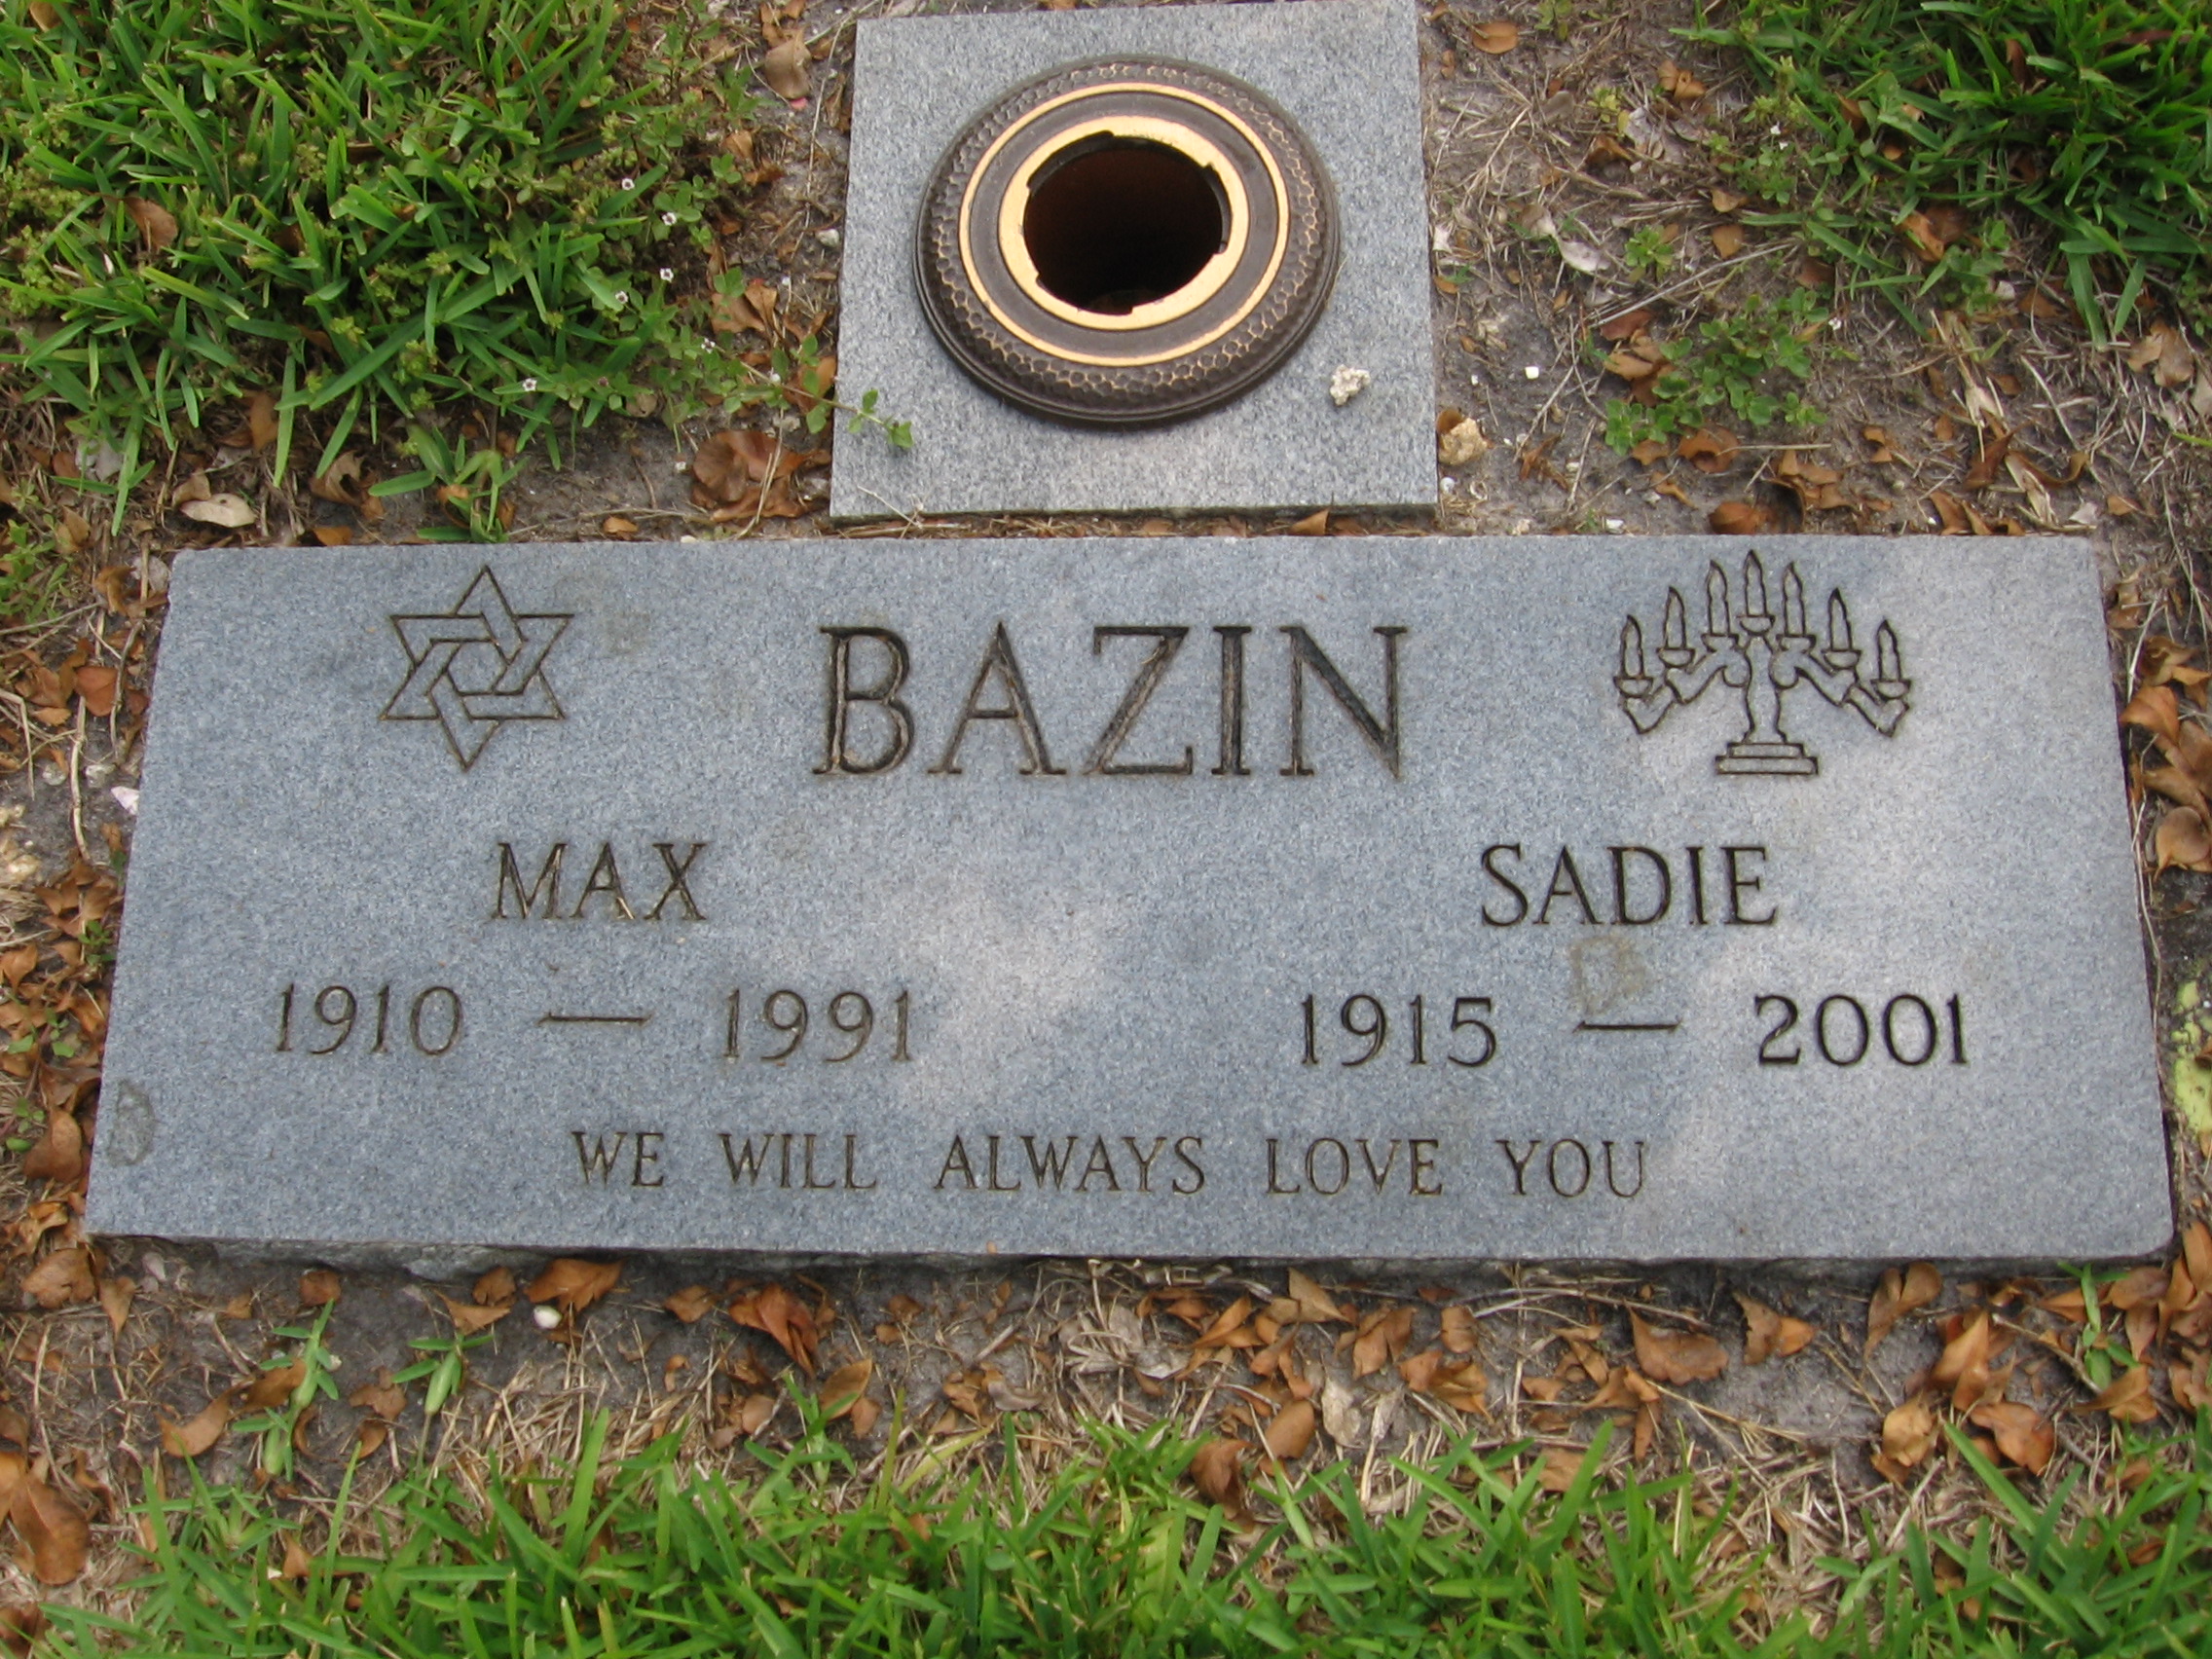 Max Bazin